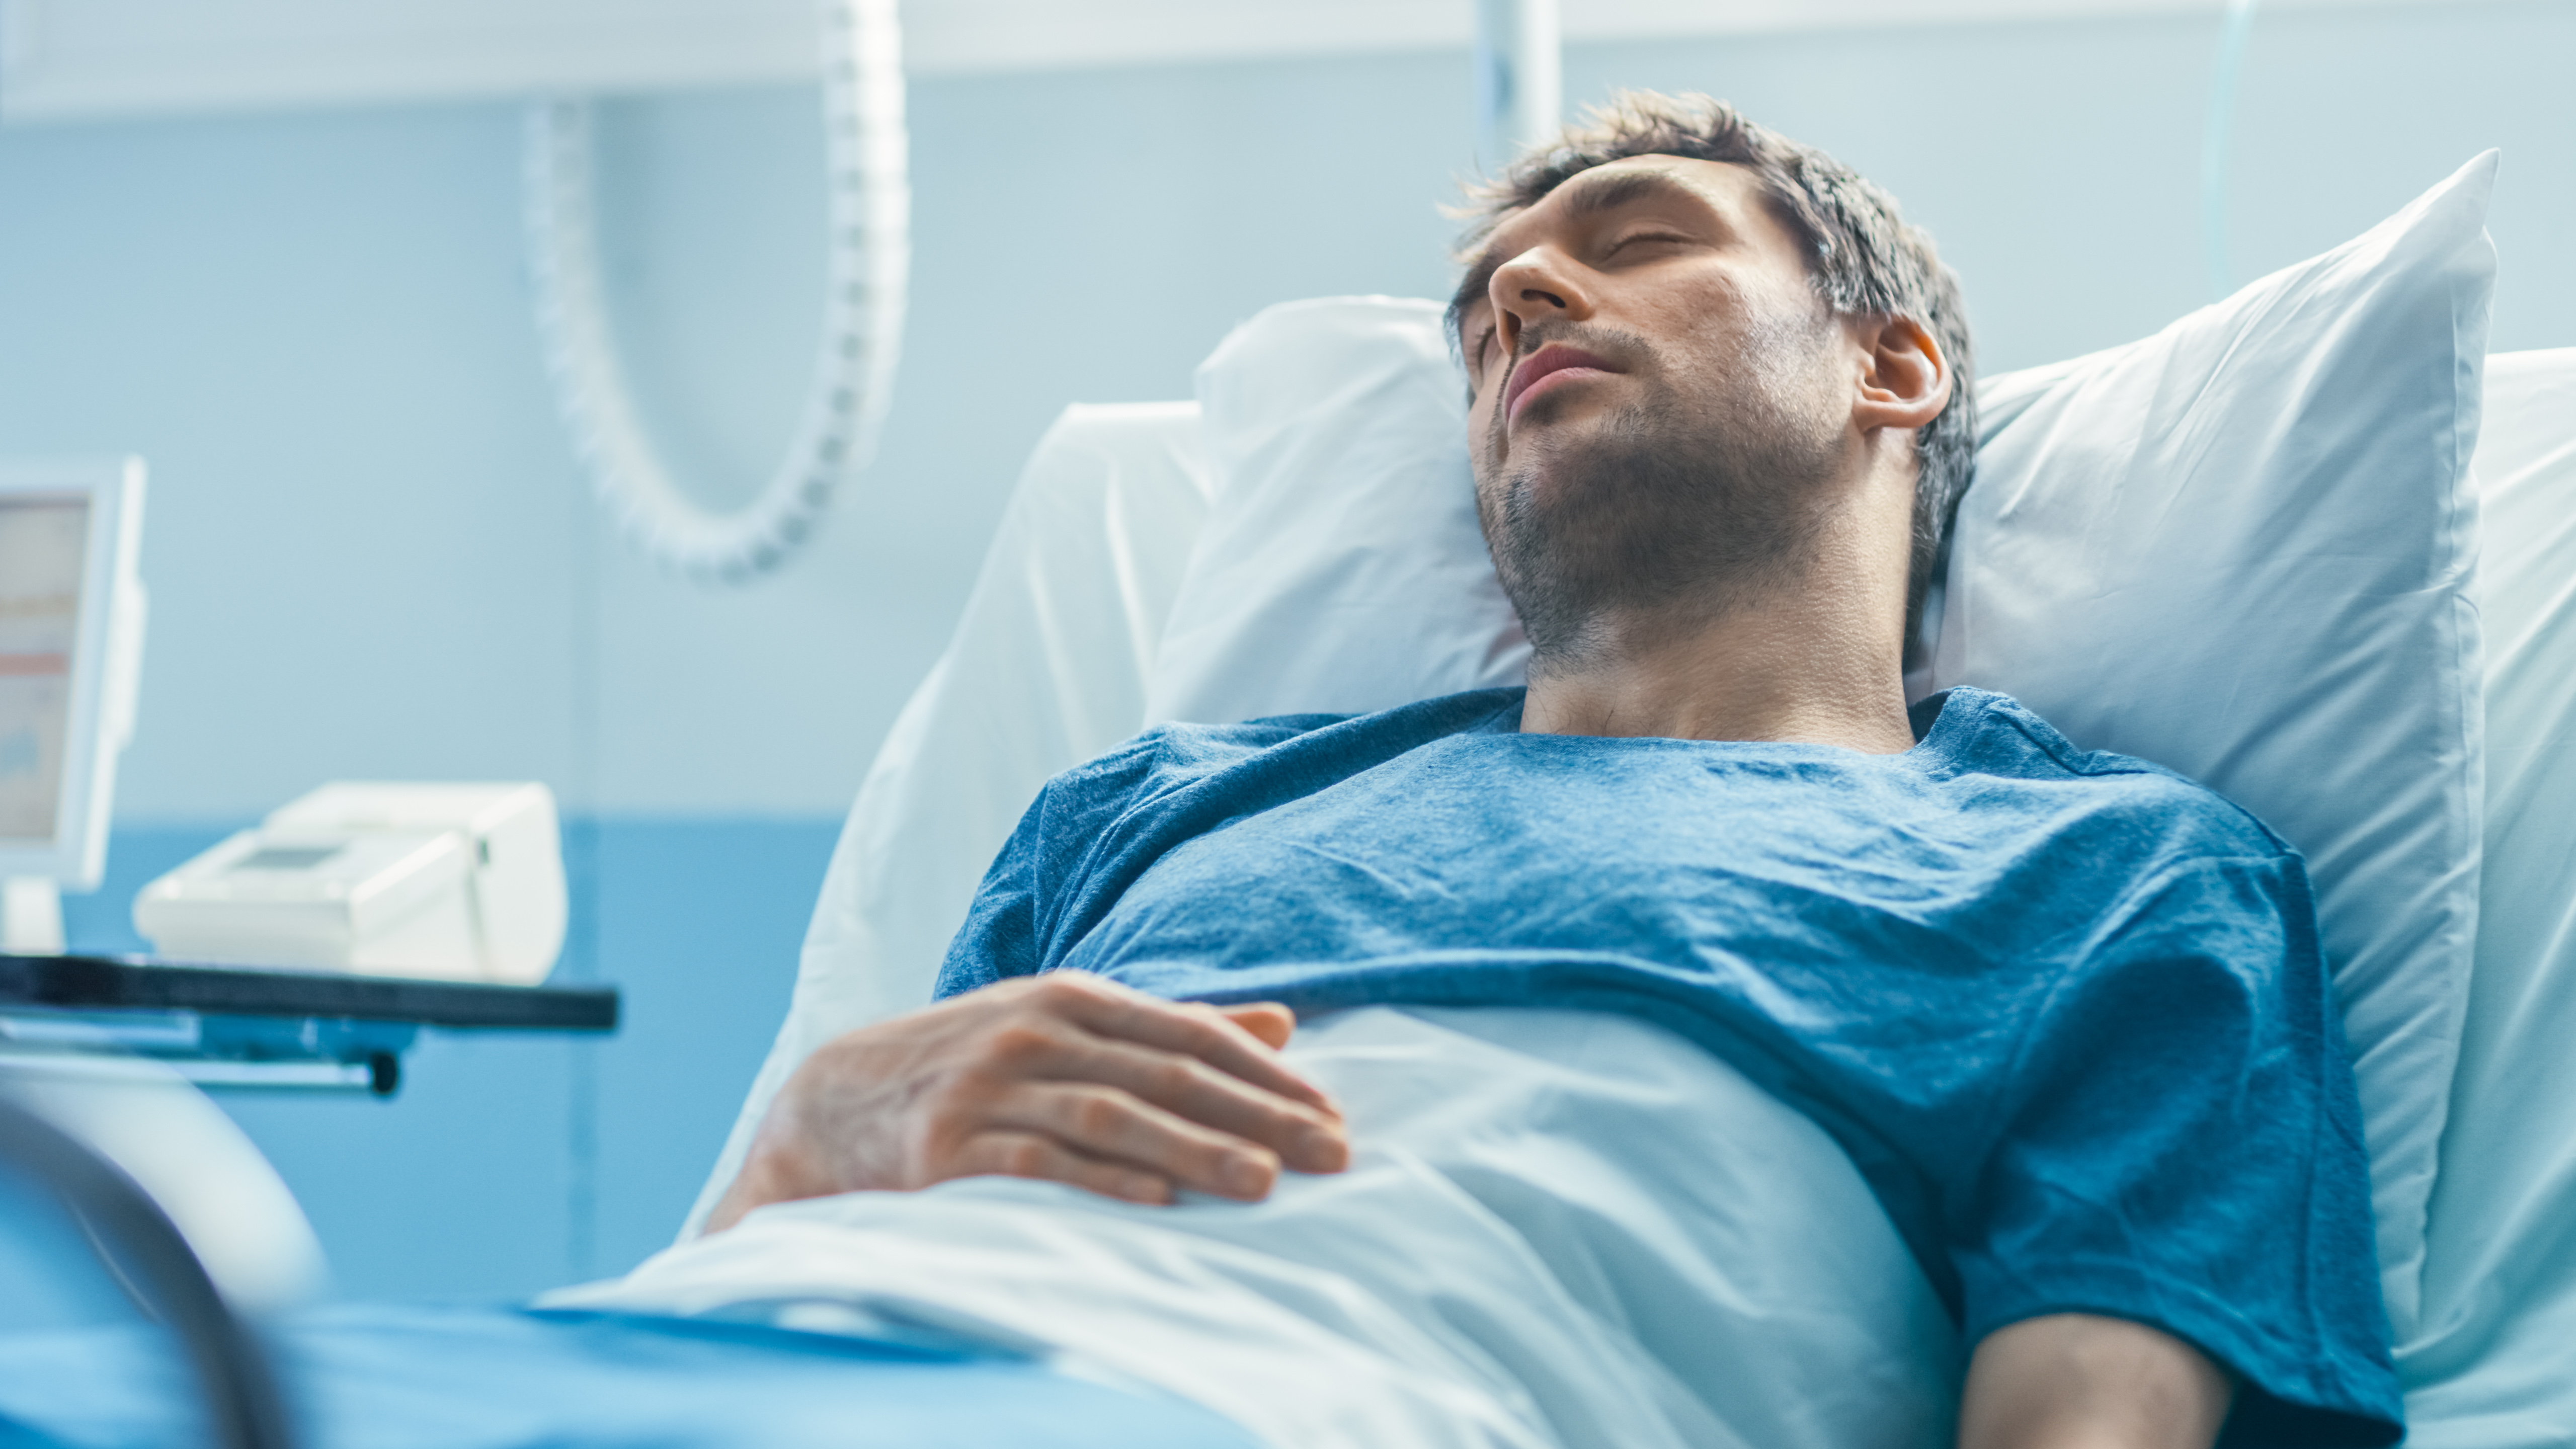 Un hombre duerme en la cama de un hospital | Fuente: Shutterstock.com